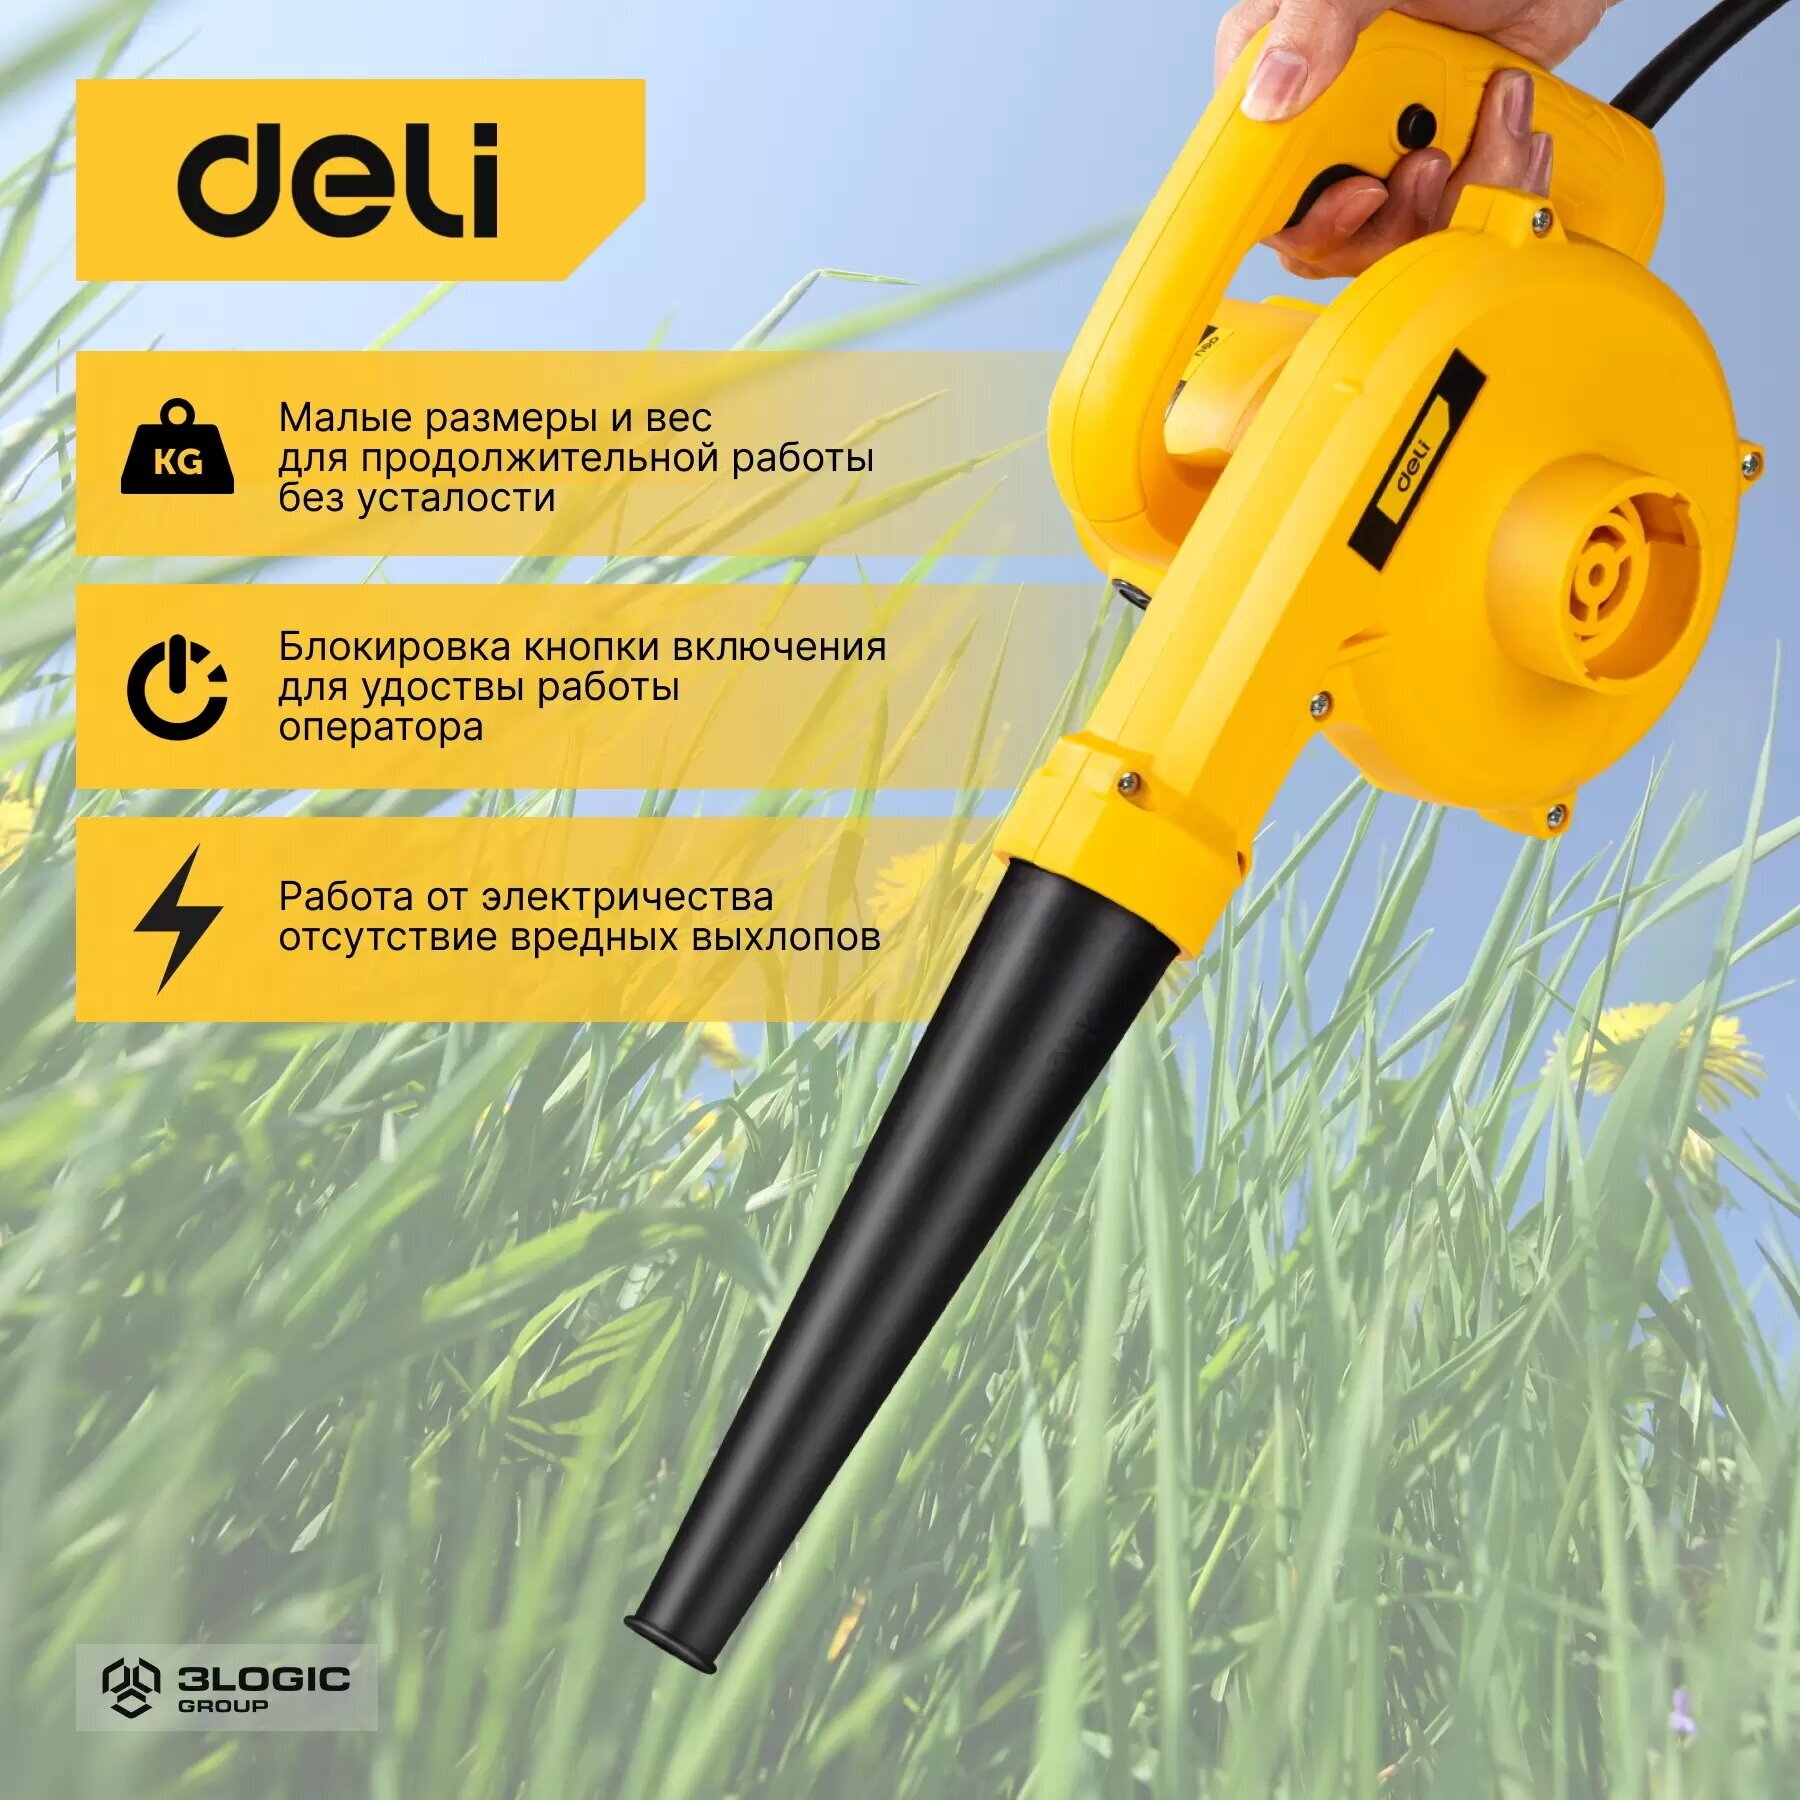 Садовая электрическая воздуходувка-пылесос Deli DL-GF35-E1 (600Вт 25м3/мин15000 об/мин)